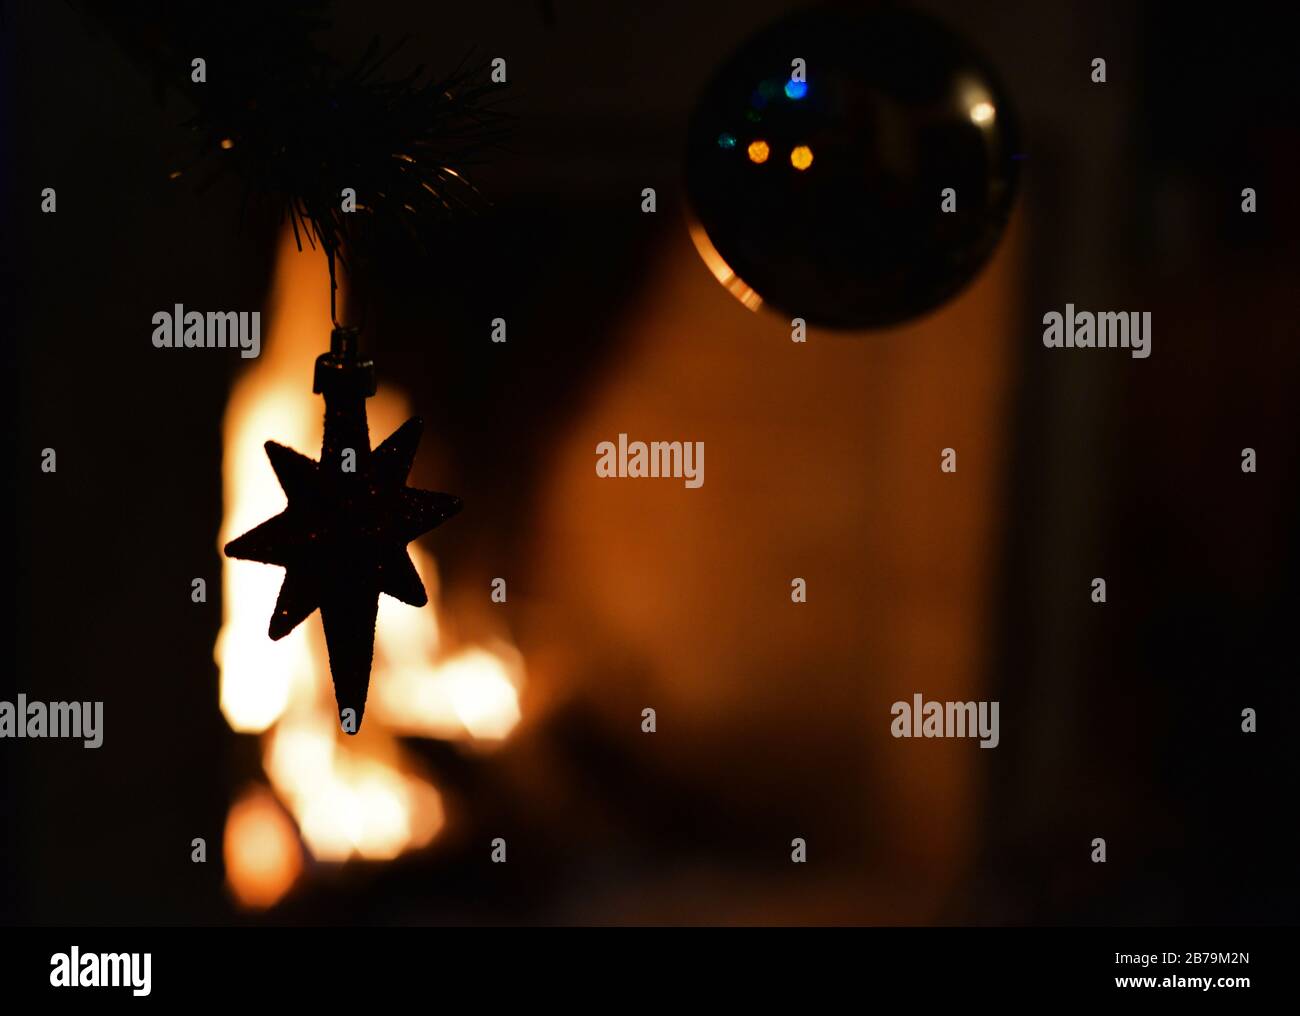 Étoile décorative suspendue à un arbre de Noël contre l'illumination d'une cheminée. Concept : saison des fêtes. Banque D'Images